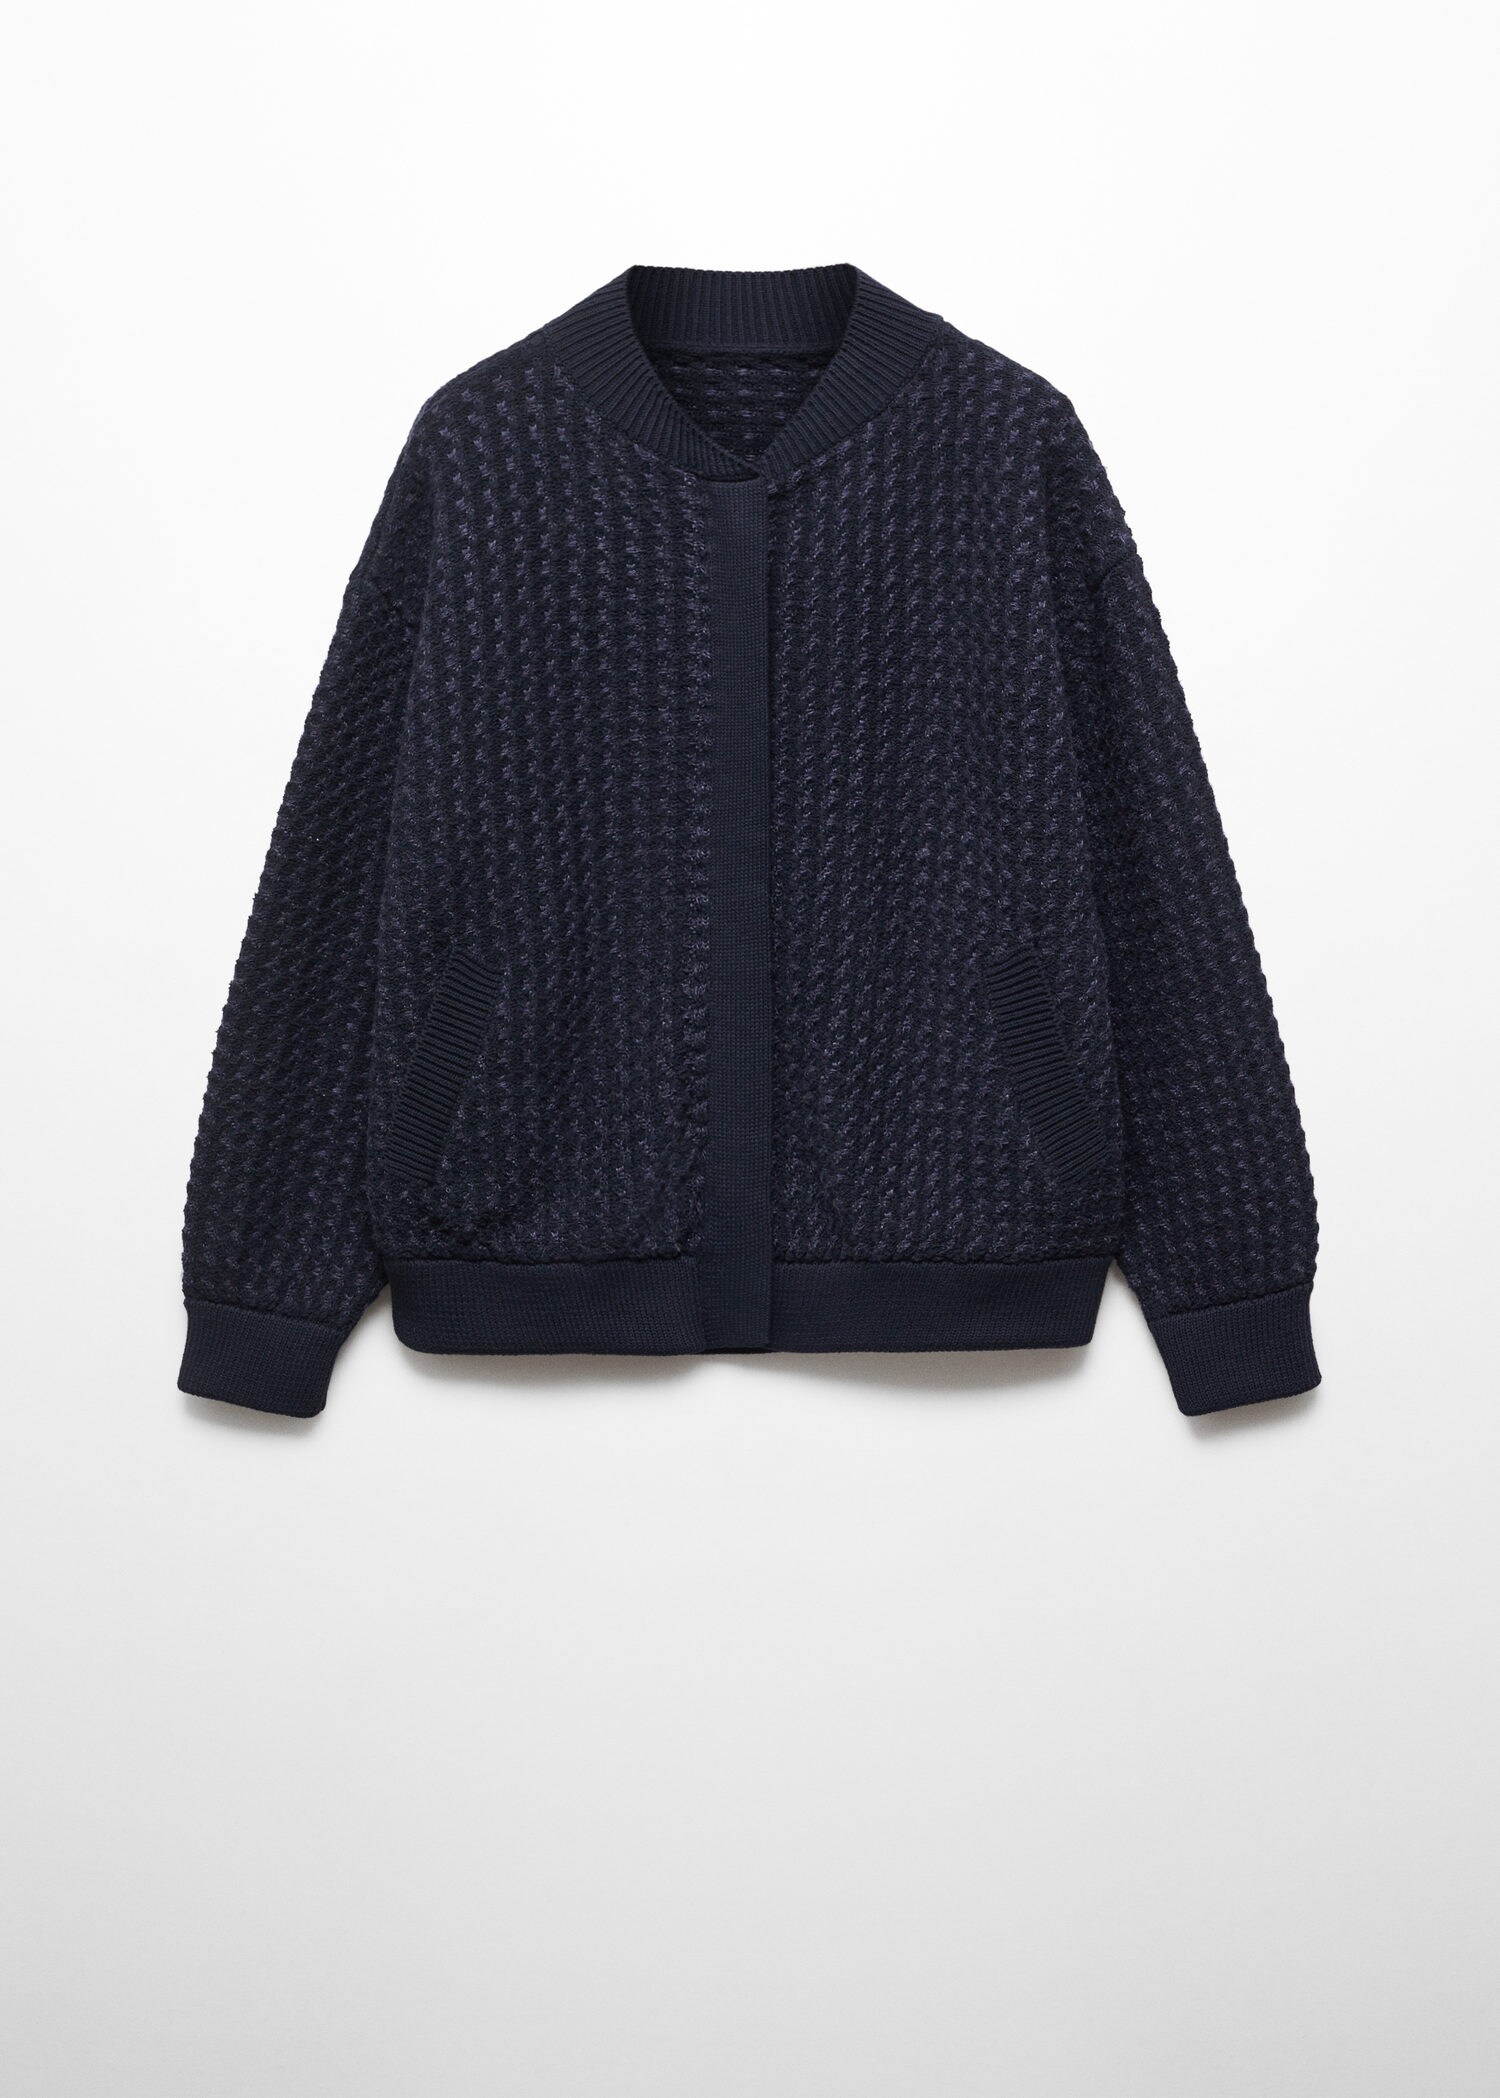 Knitted bomber jacket | MANGO